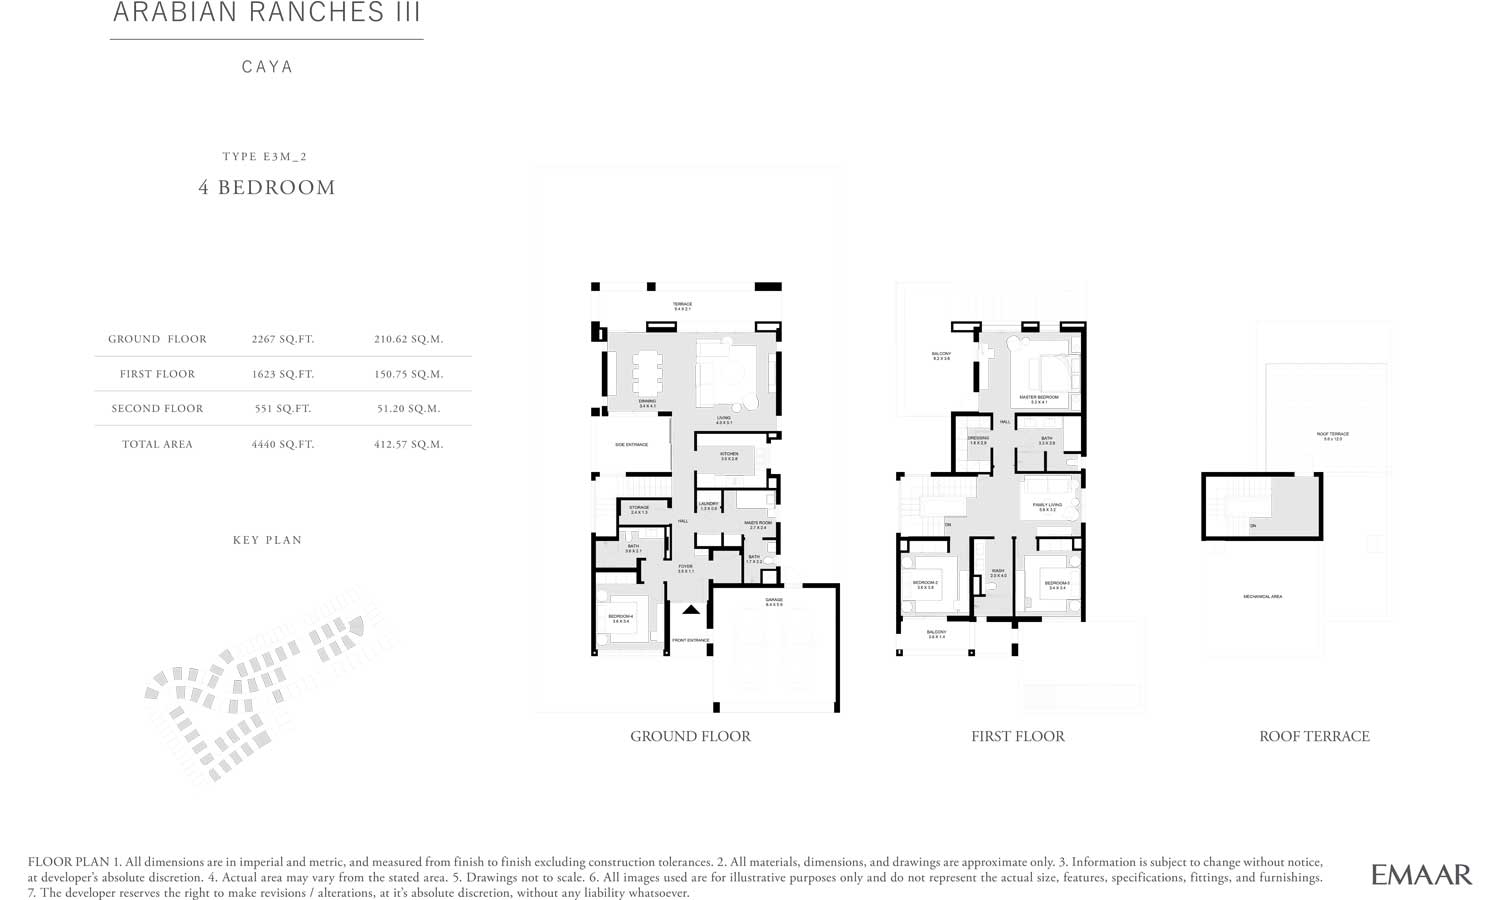 4-Bedroom-Floor-Plan-Caya-Arabian-Ranches-3